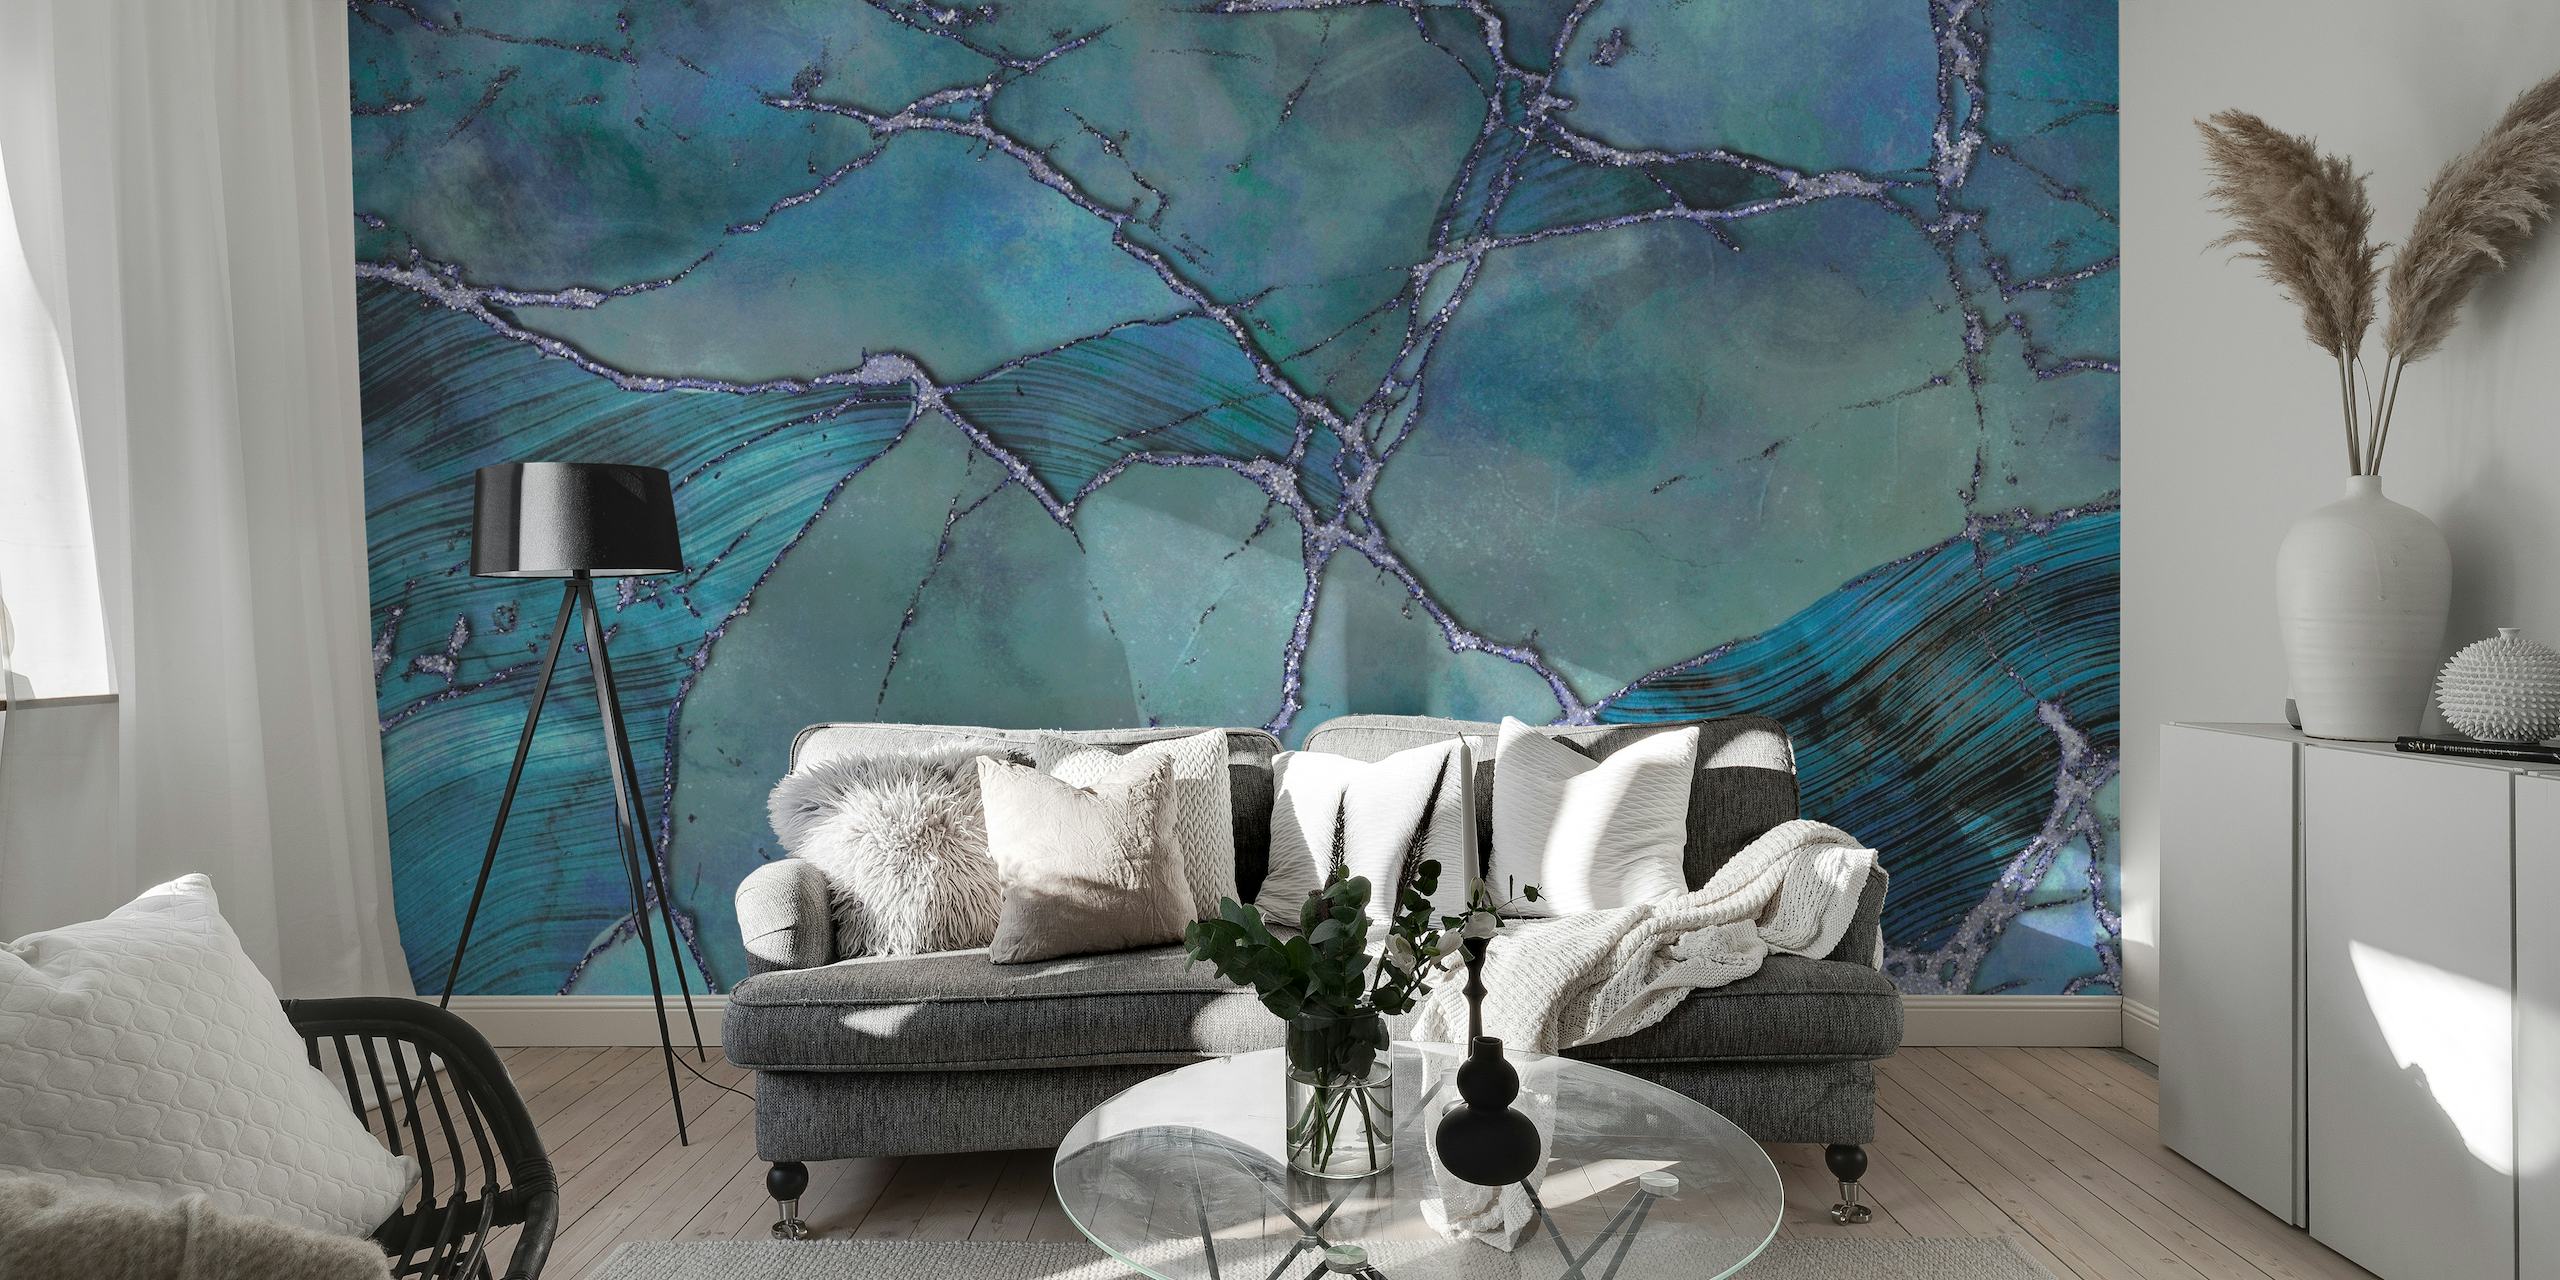 Lussuoso murale con texture di pietre preziose in marmo blu con motivi vorticosi e tonalità ricche.